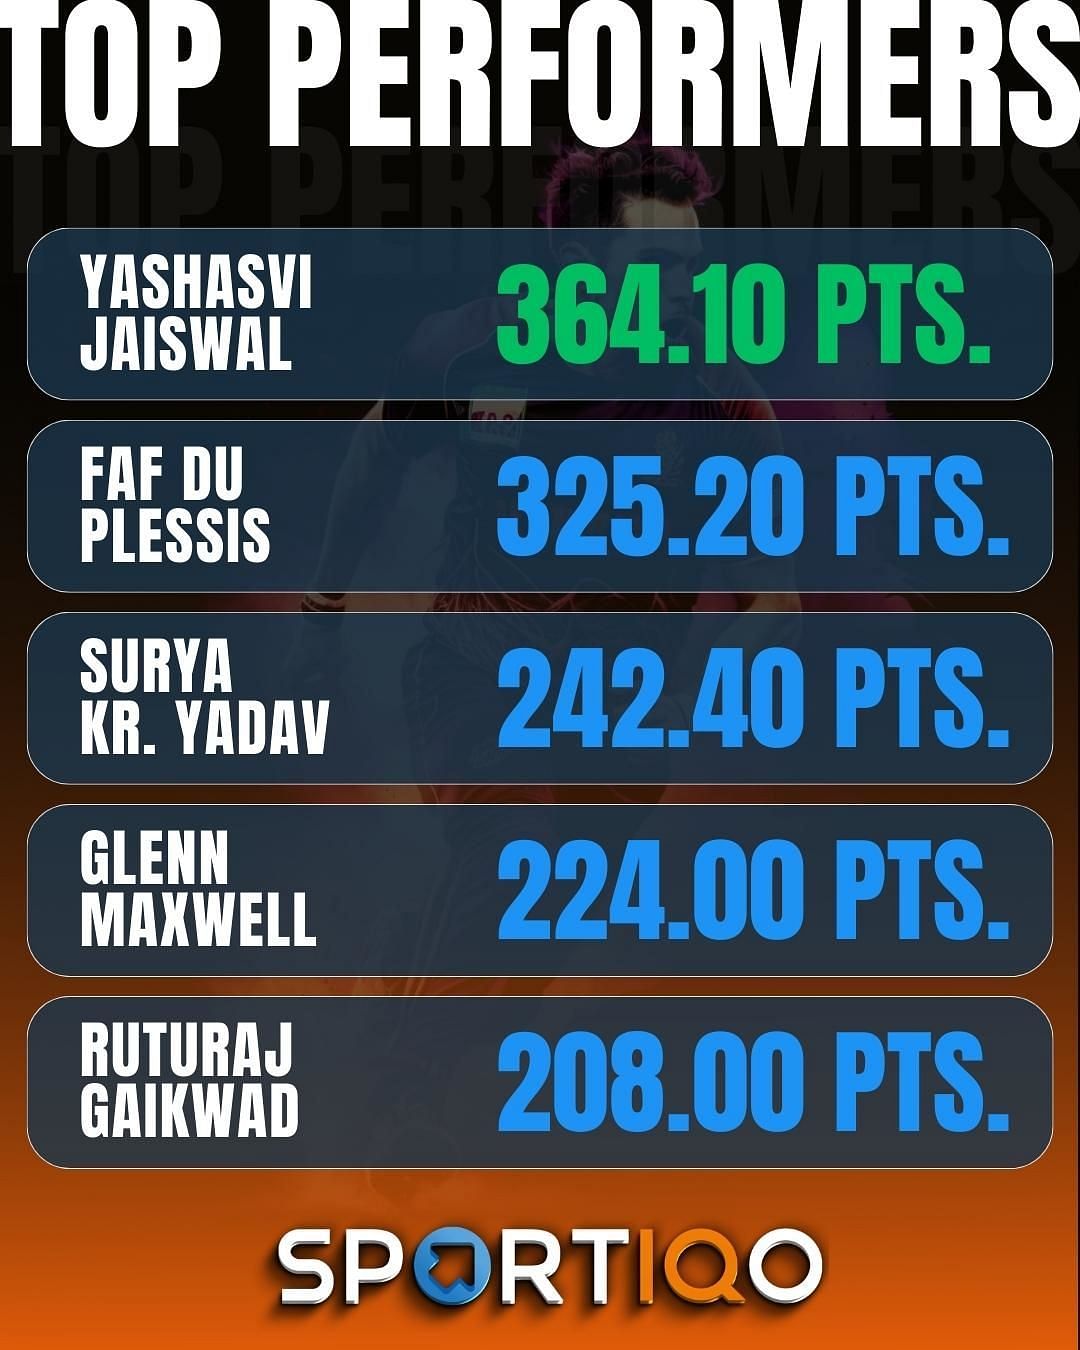 عروض Suryakumar Yadav المذهلة تجعله يصل إلى أعلى الرابحين & # 039 ؛  قائمة الأسبوع الماضي ،